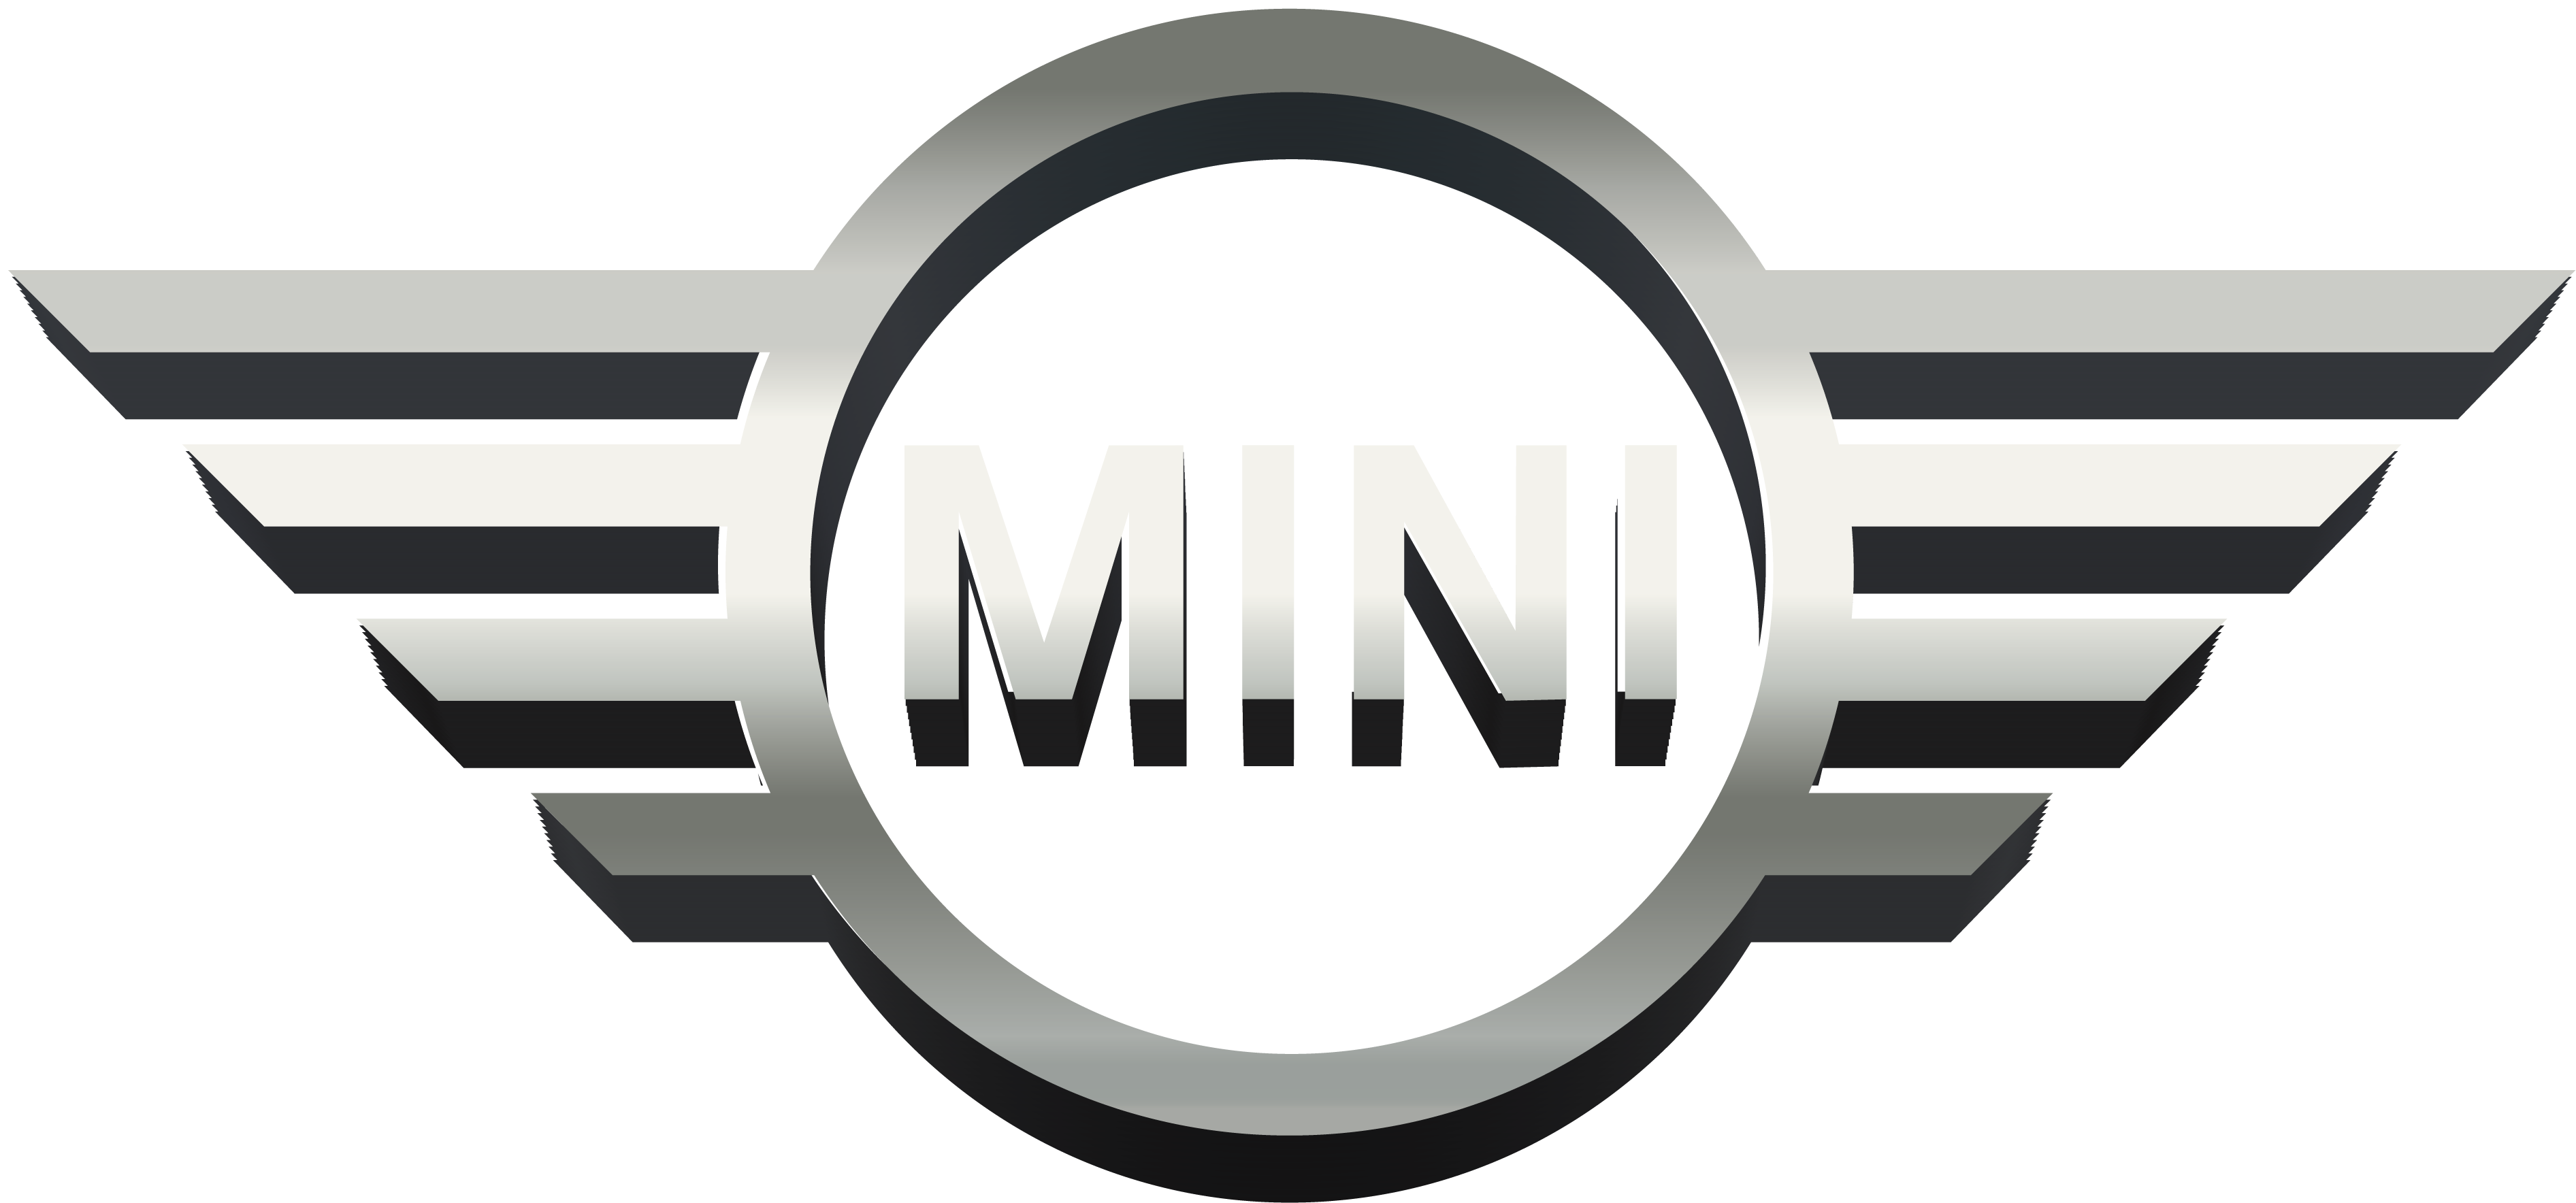 MINI Logo Transparent File